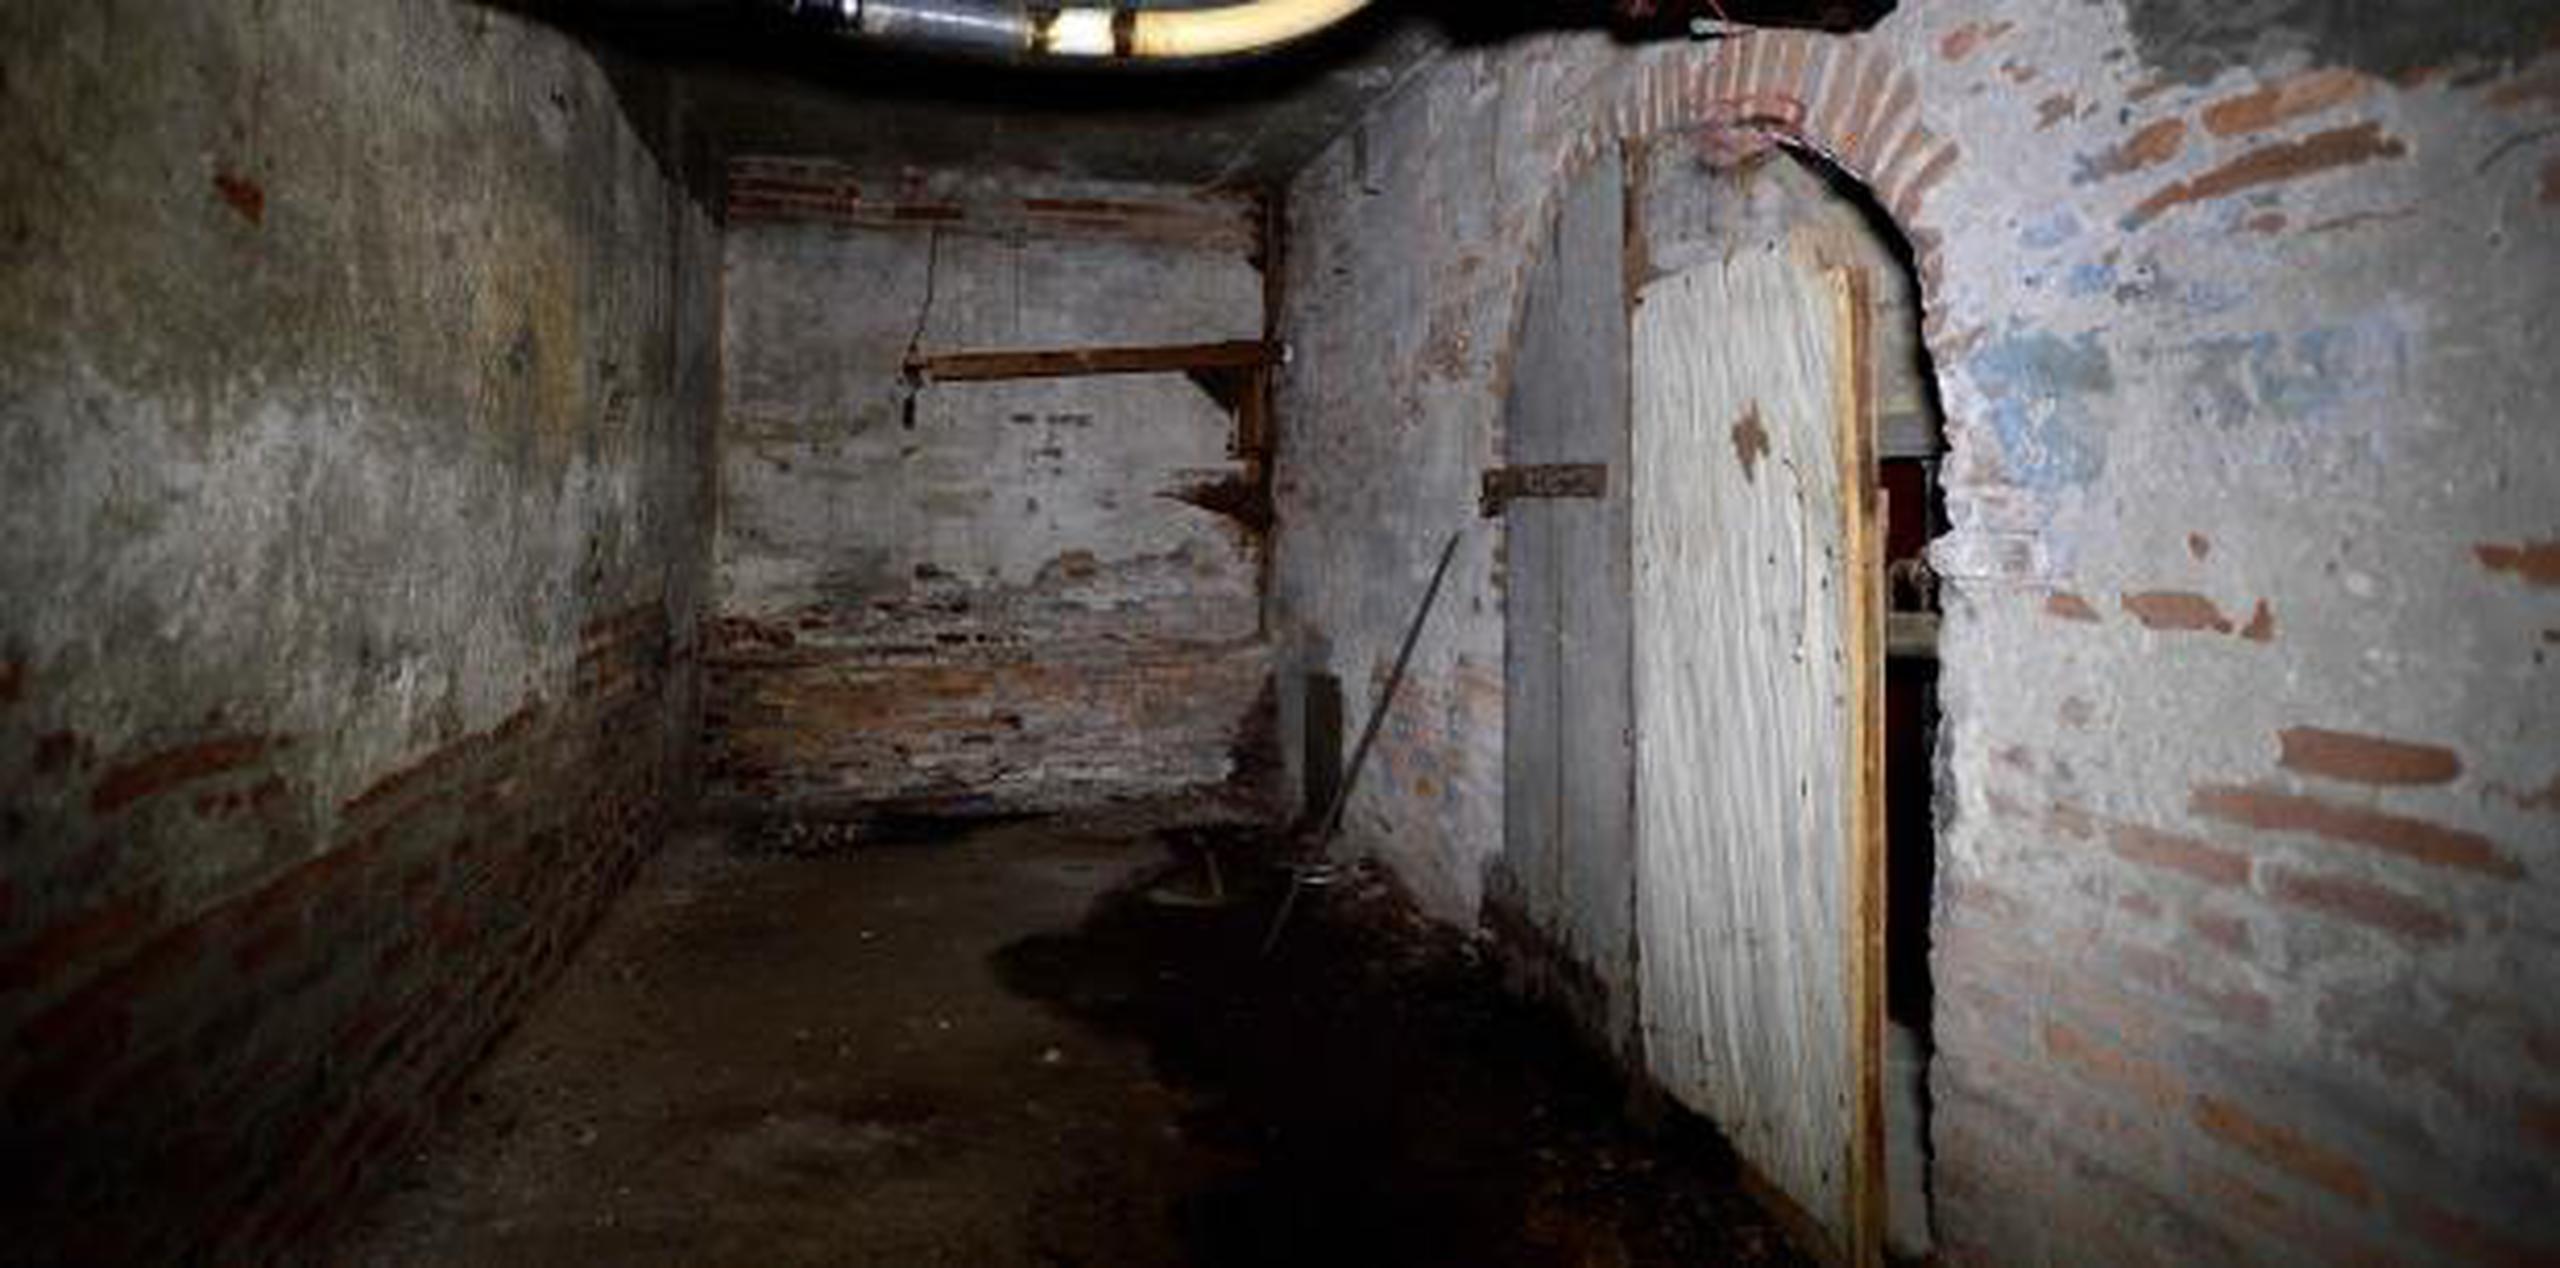 El sistema de túnel tenía tres funciones, utilizados como escape durante ataques o invasión, para transportar los presos a la antigua corte o como desagüe pluvial en tiempo de inundaciones. (Archivo)